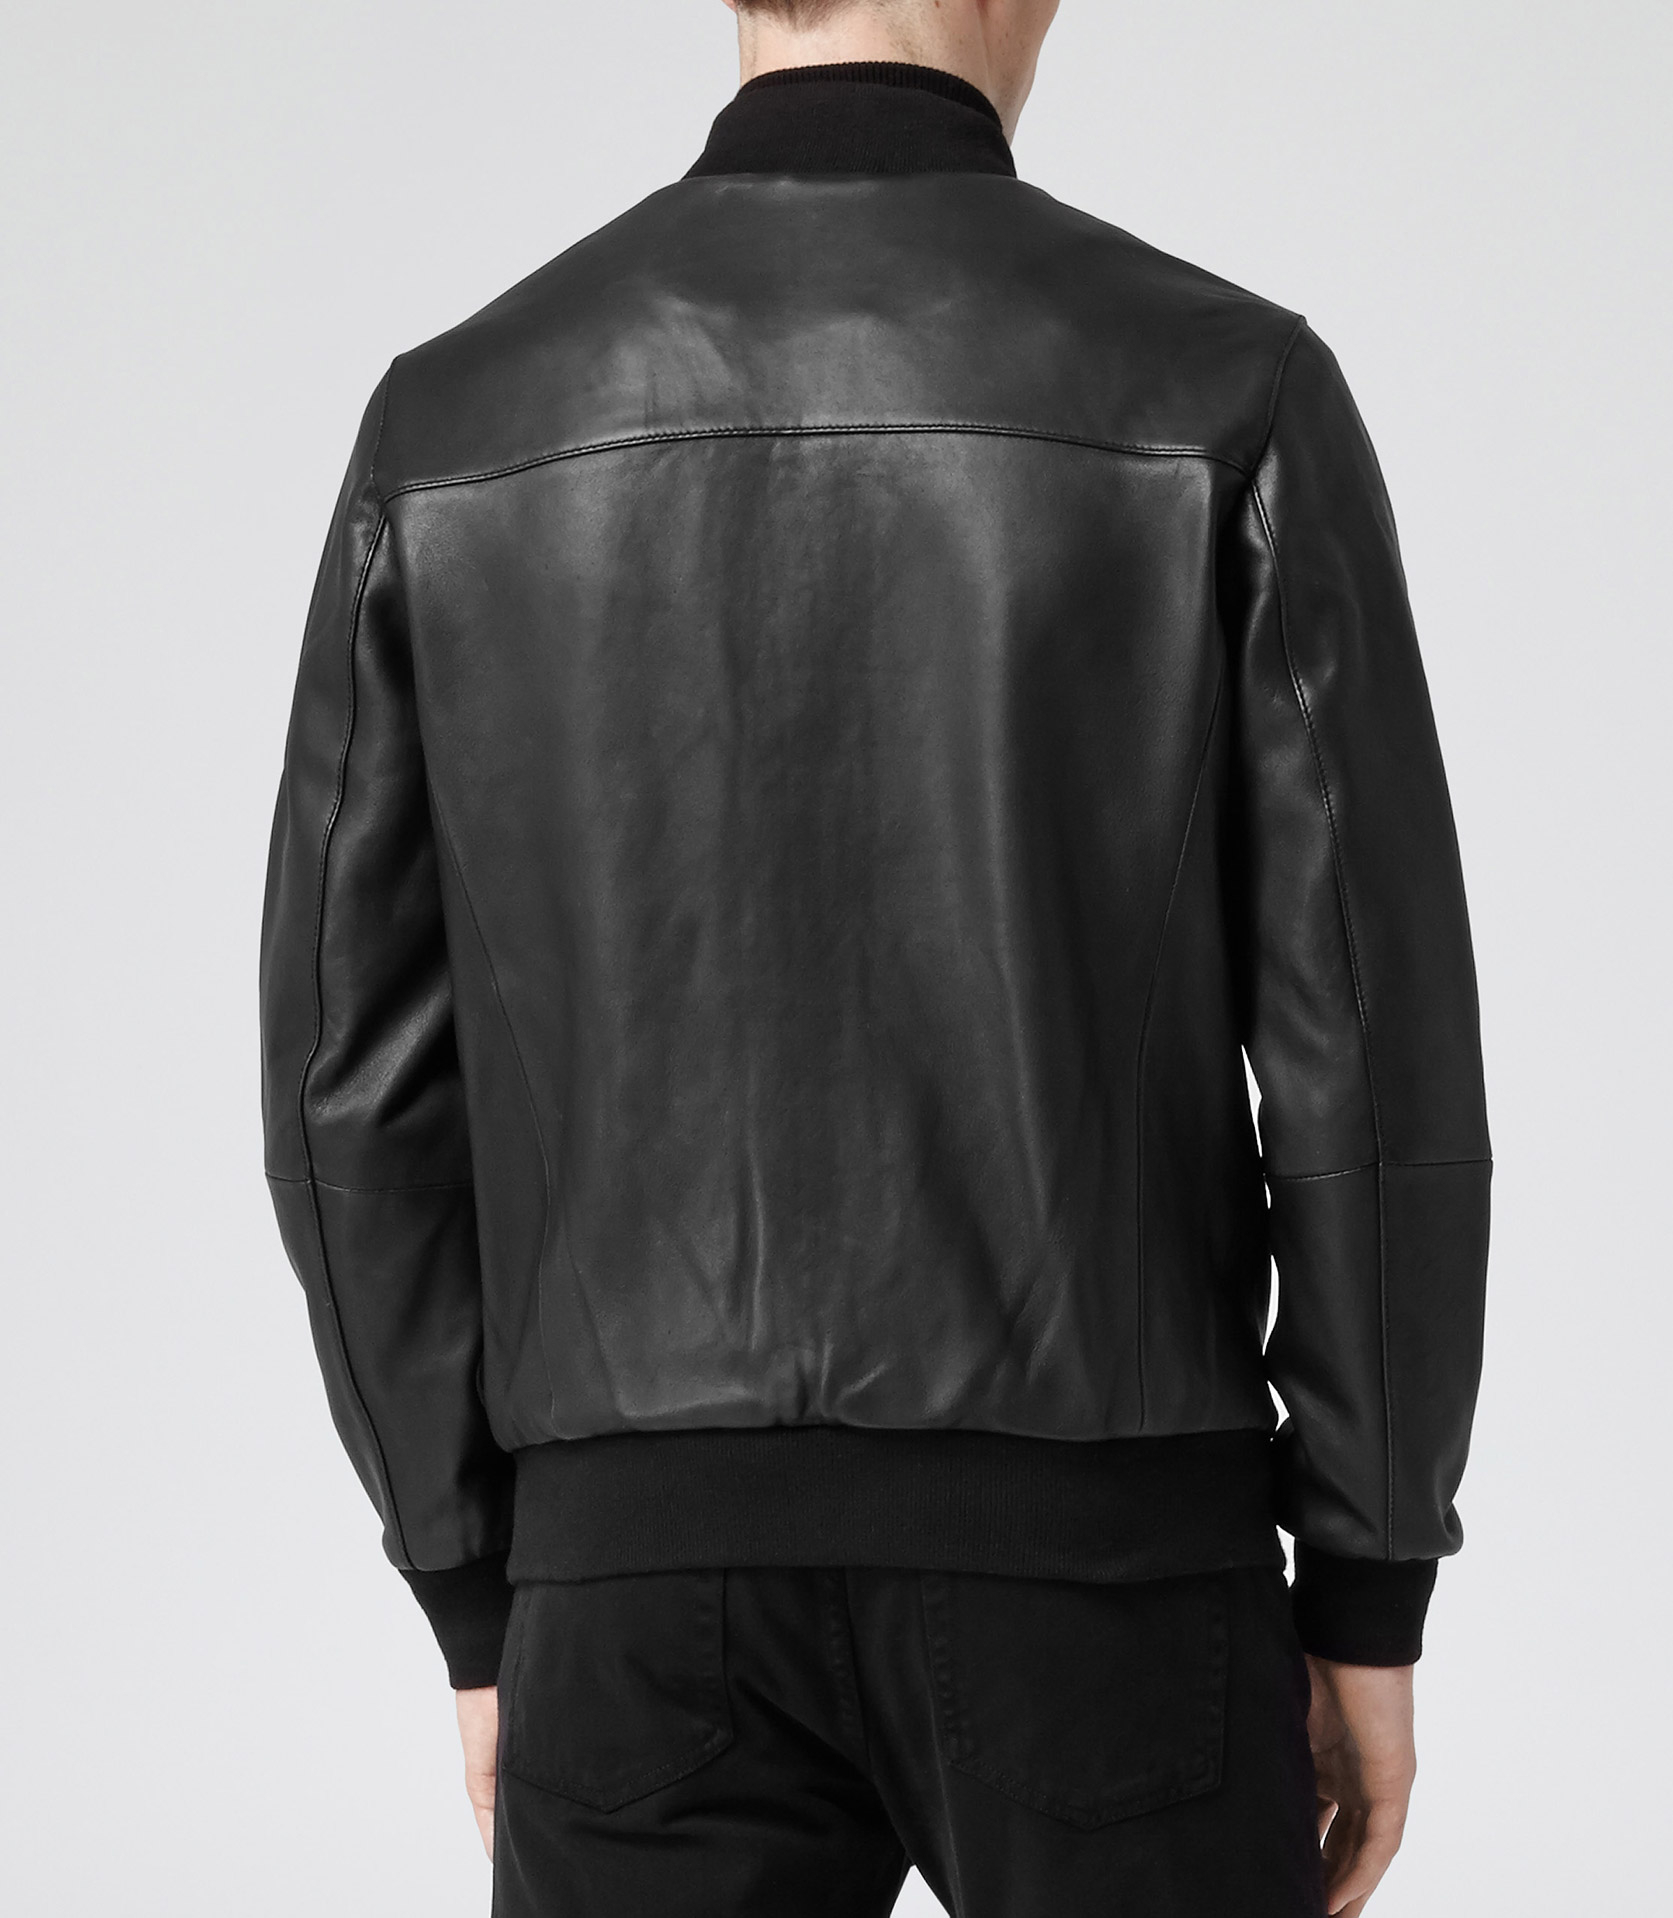 Lyst - Reiss Virgil Leather Bomber Jacket in Black for Men